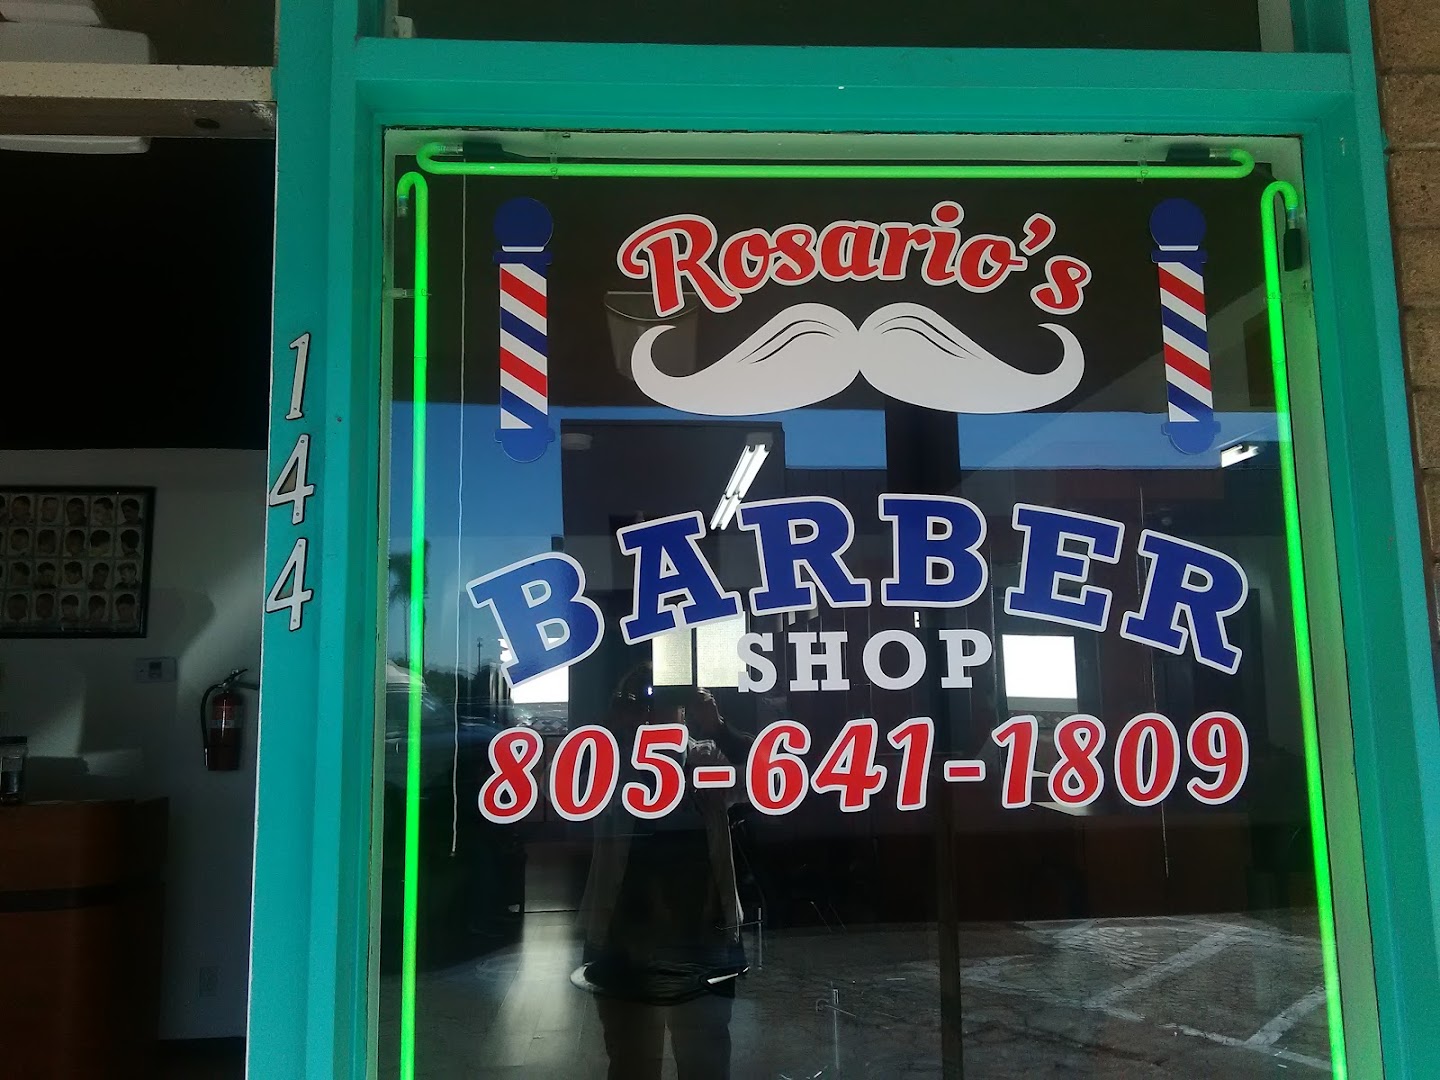 Rosario's Barber Shop